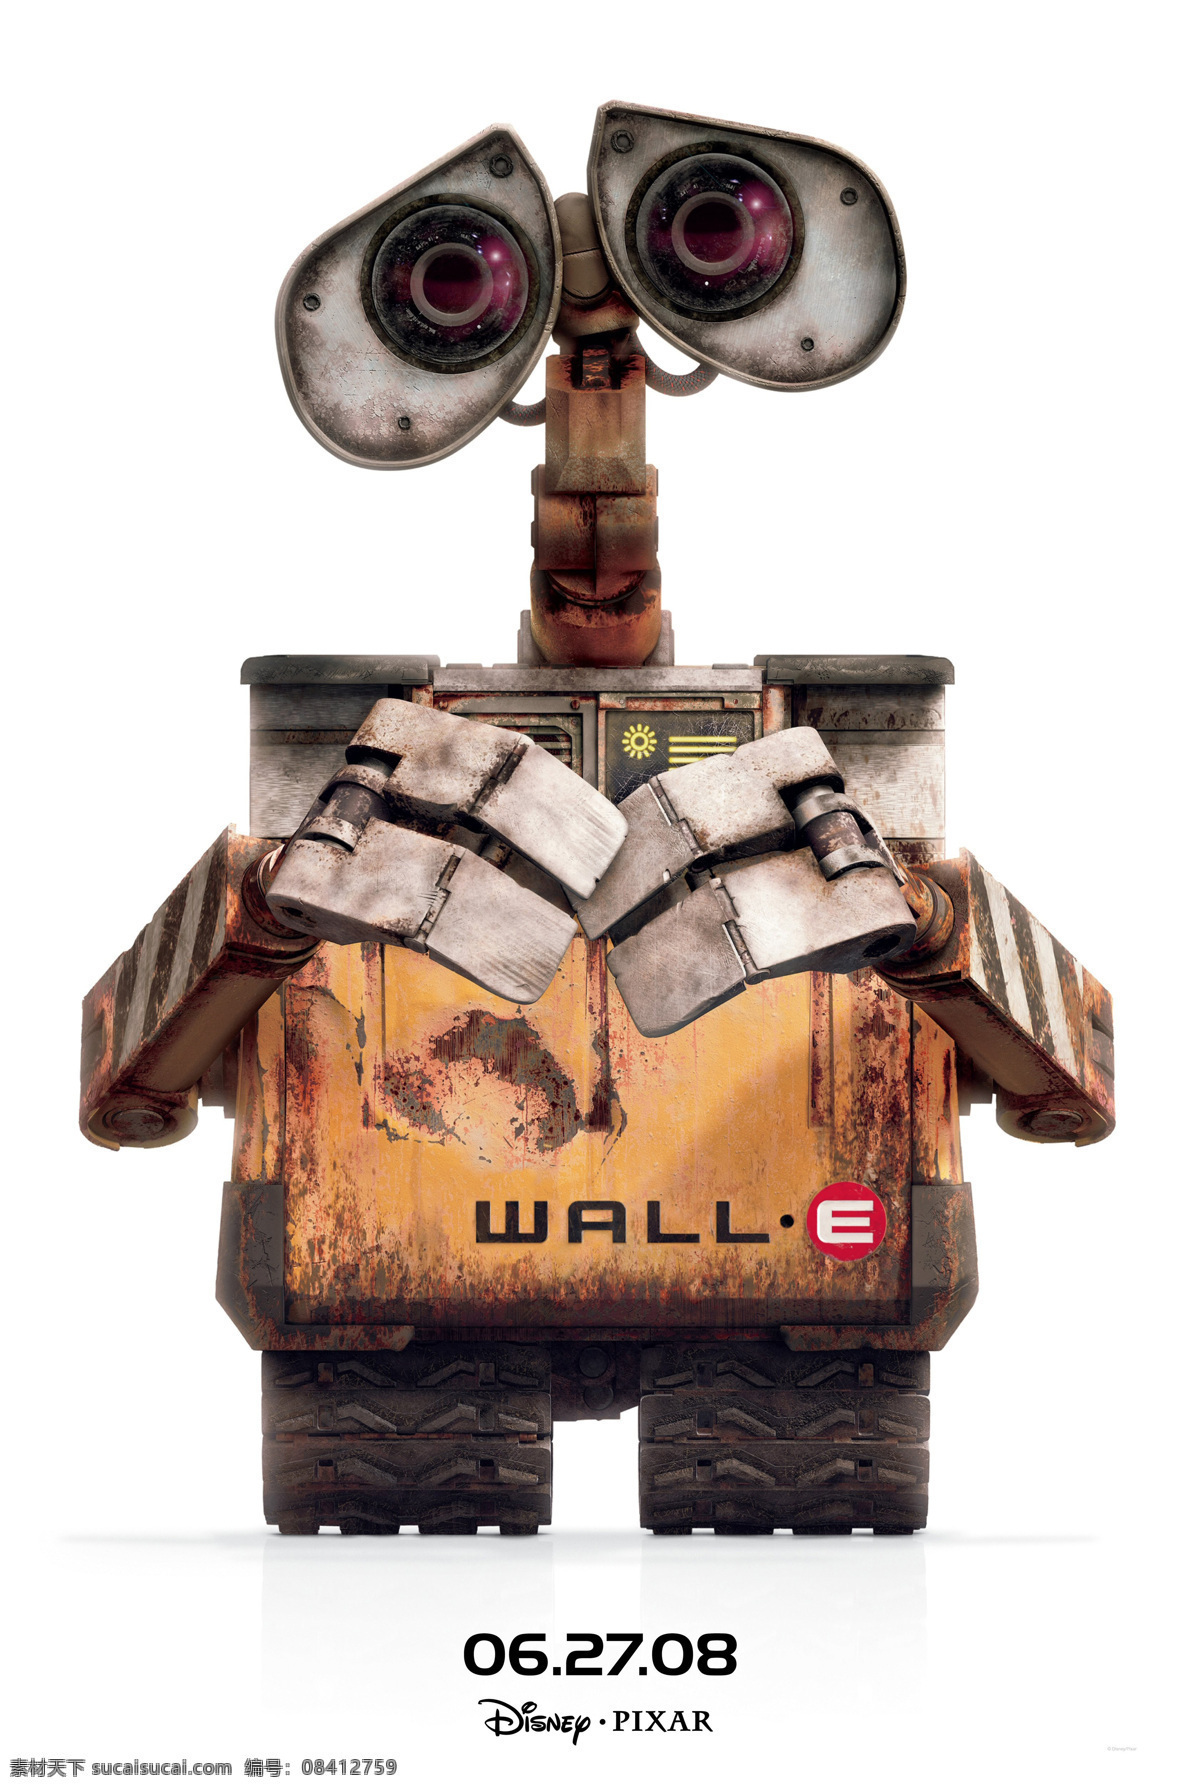 机器人总动员 机器人 总动员 迪斯尼 瓦力 伊娃 迪士尼动画 预告版 正式版 皮克斯 皮克斯动画 动画电影 电影海报 海报 经典动画电影 pixar 文化艺术 影视娱乐